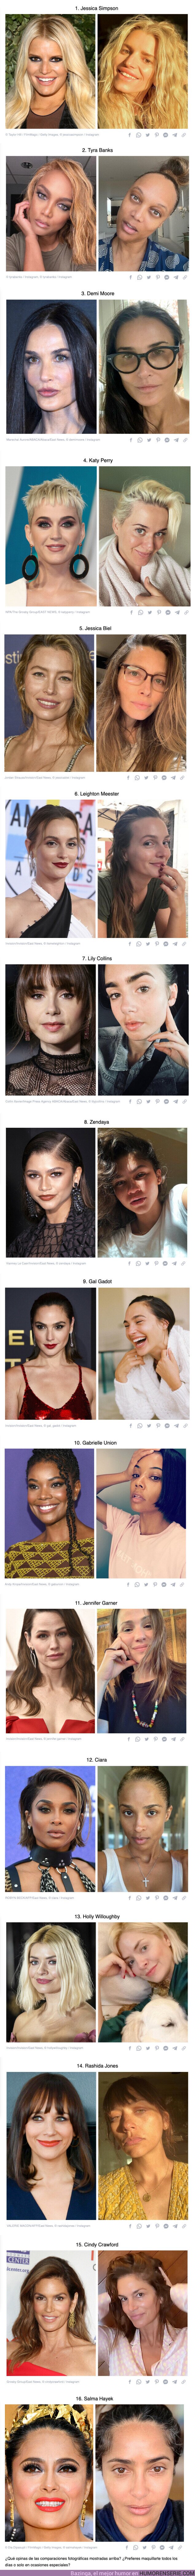 111862 - GALERÍA: 15 famosas que están completamente distintas con o sin maquillaje